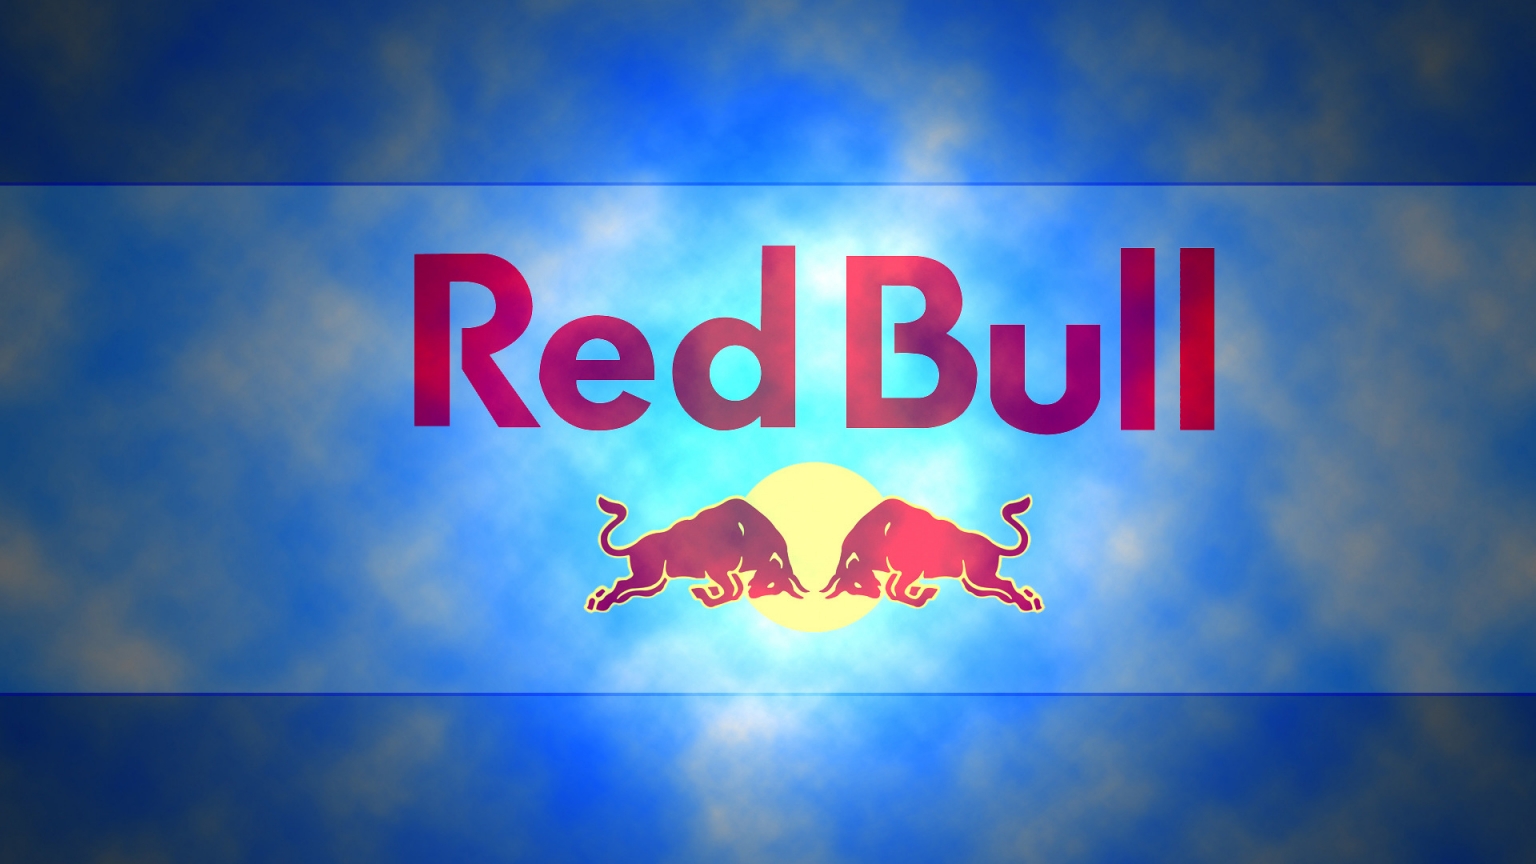 Red Bull Logo for 1536 x 864 HDTV resolution